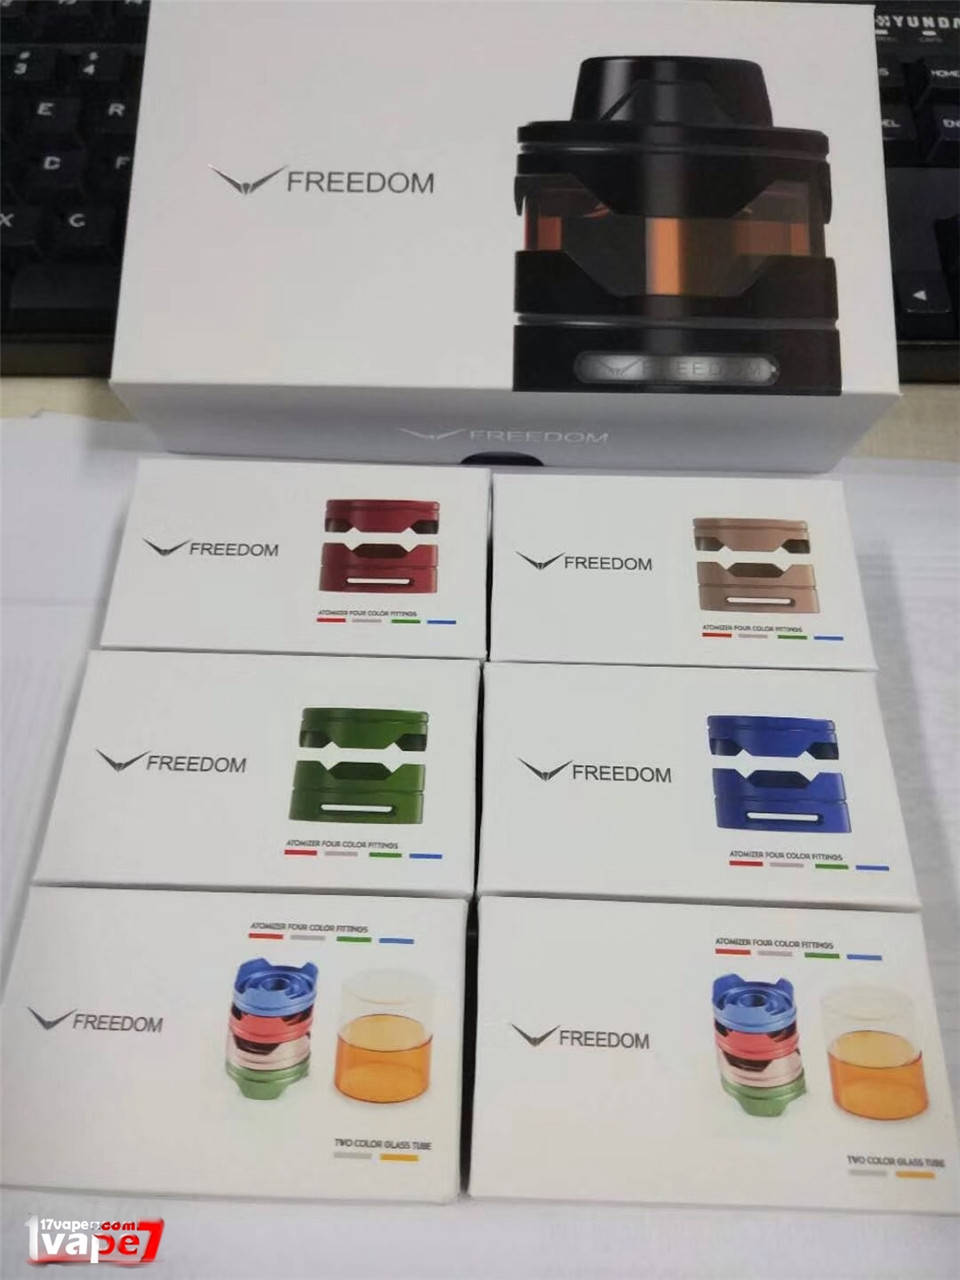 FREEDOM自由雾化器电子烟设备评测